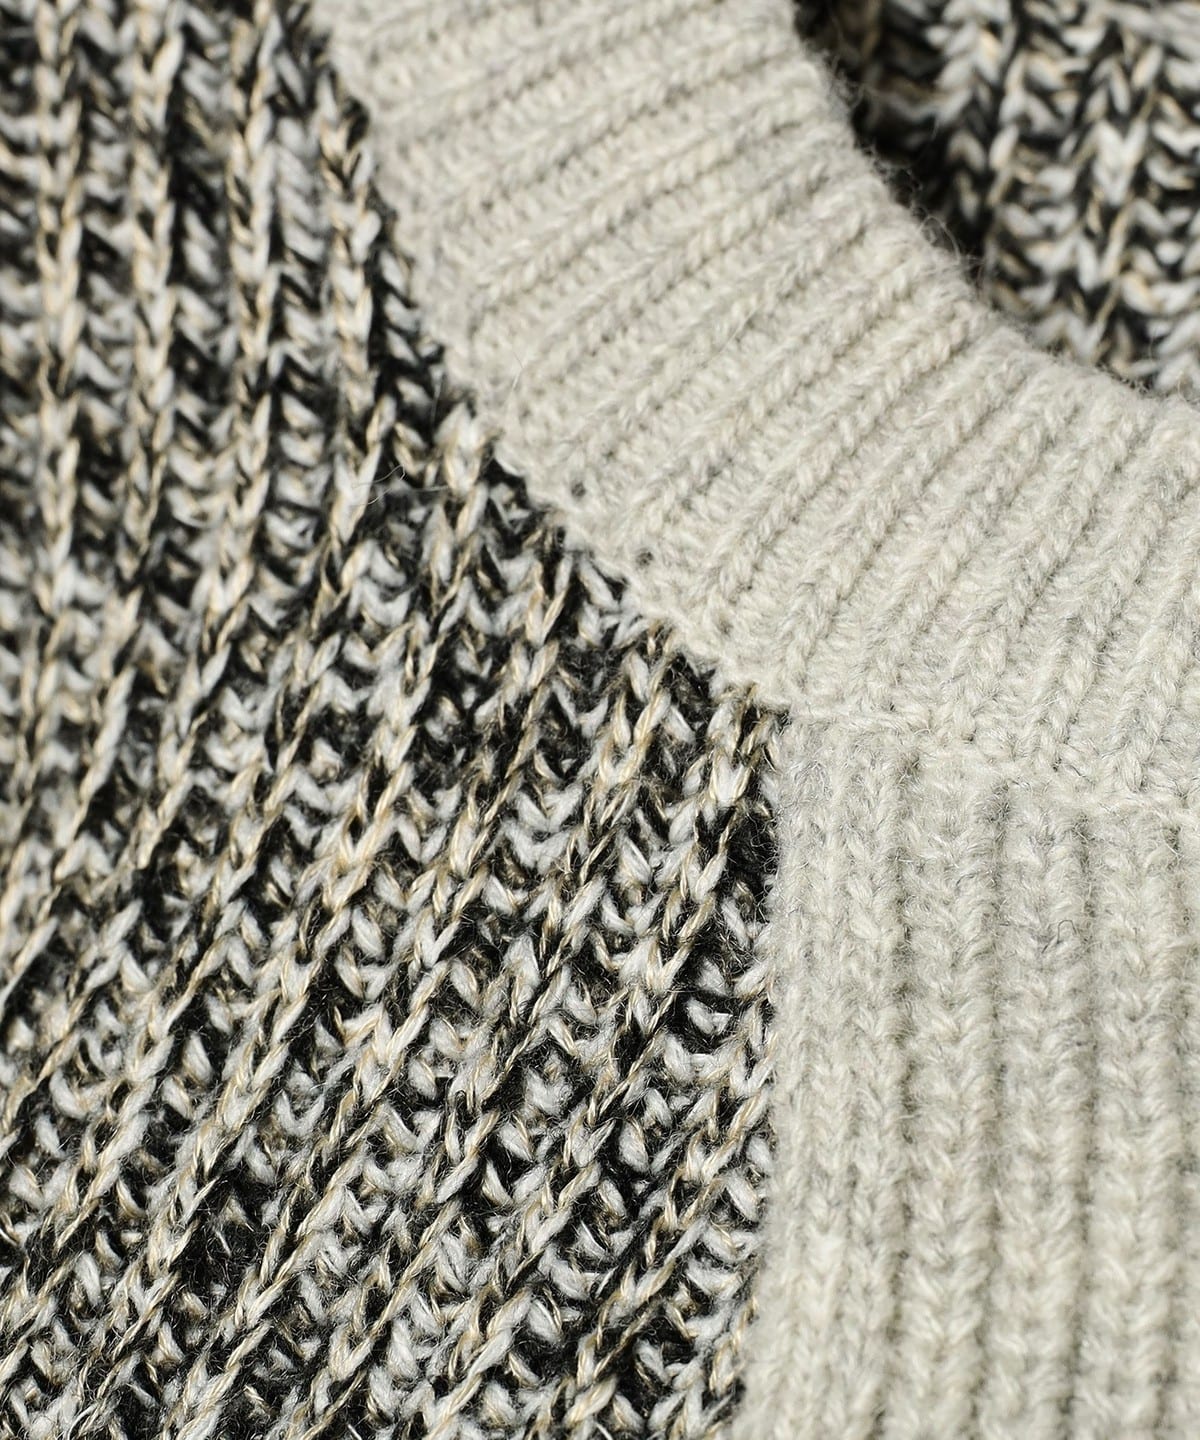 Ray BEAMS Ray BEAMS RBS Fringe Kirikae pullover knit (tops knit ...